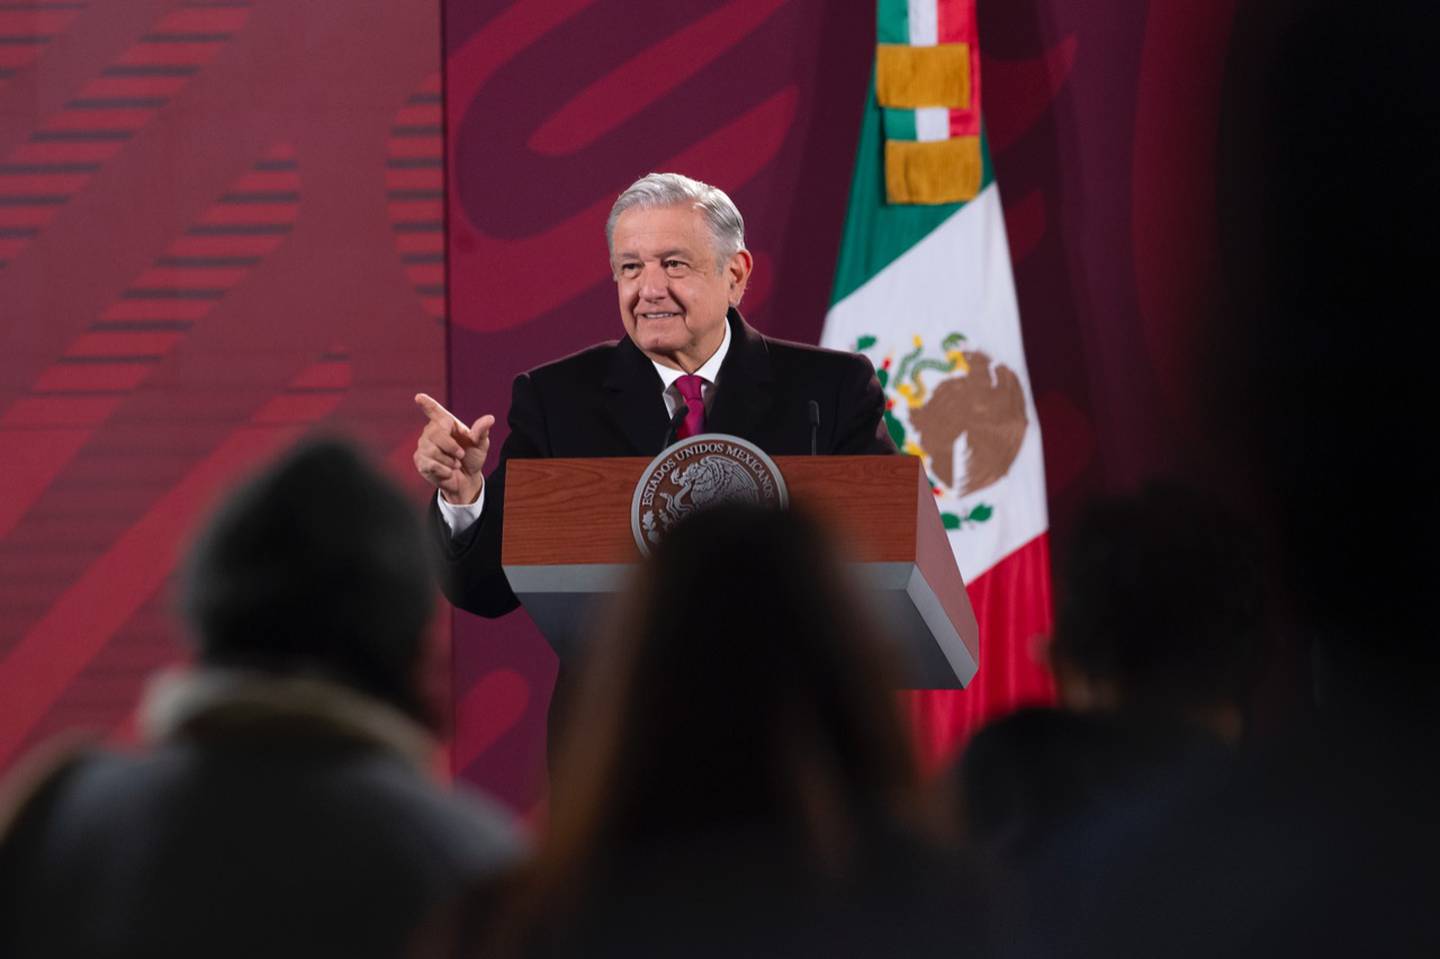 El presidente dijo en su conferencia matutina que Ramiro Ayala asistiría al evento de Ortega, horas despúes de que la cancillería mexicana se retractara de asistir (Cortesía: Gobierno de México)